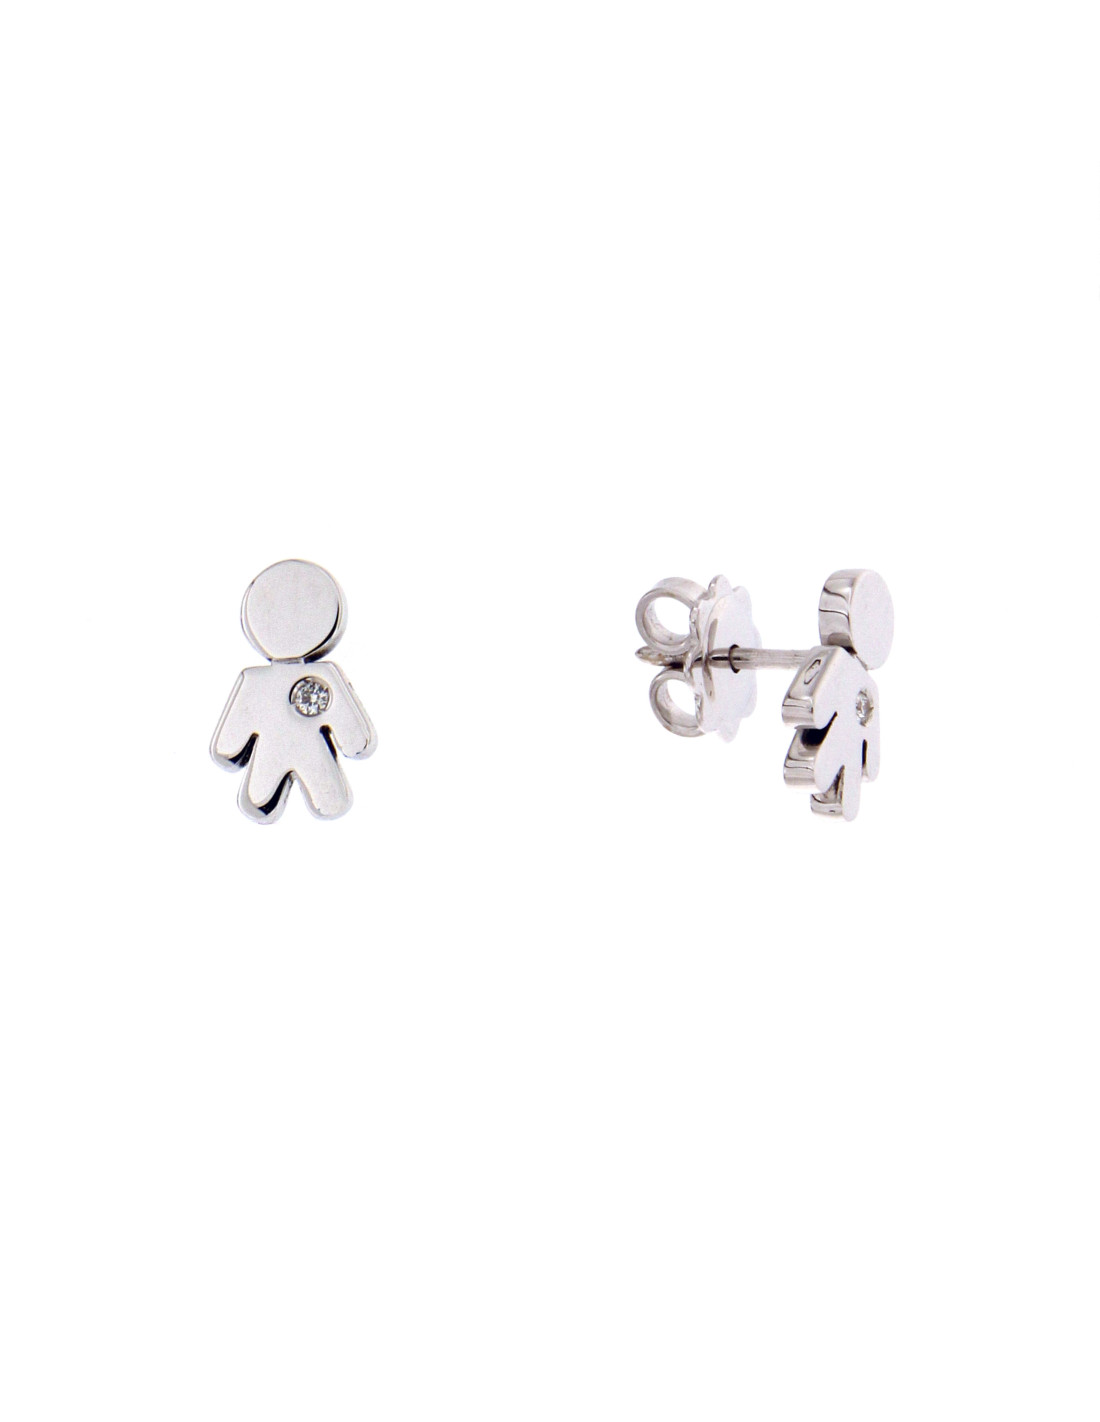 22kt Gold Baby Boy Stud Earrings | Jewellery Online Purchase